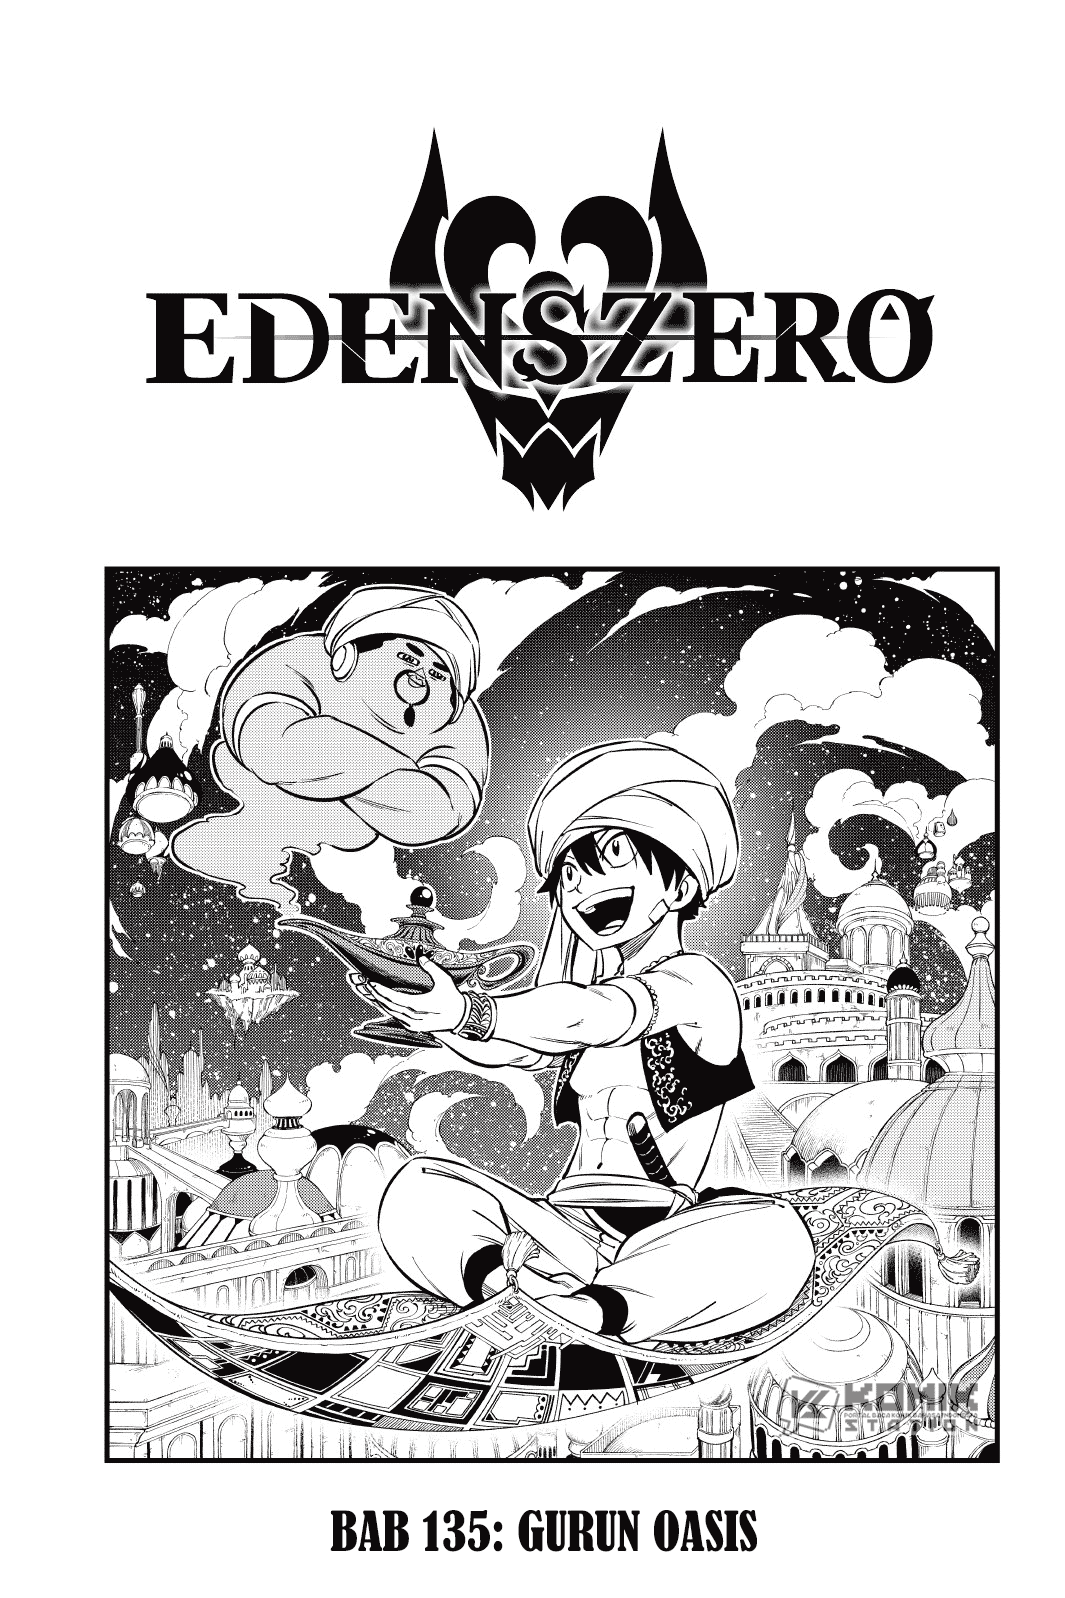 Eden’s Zero Chapter 135